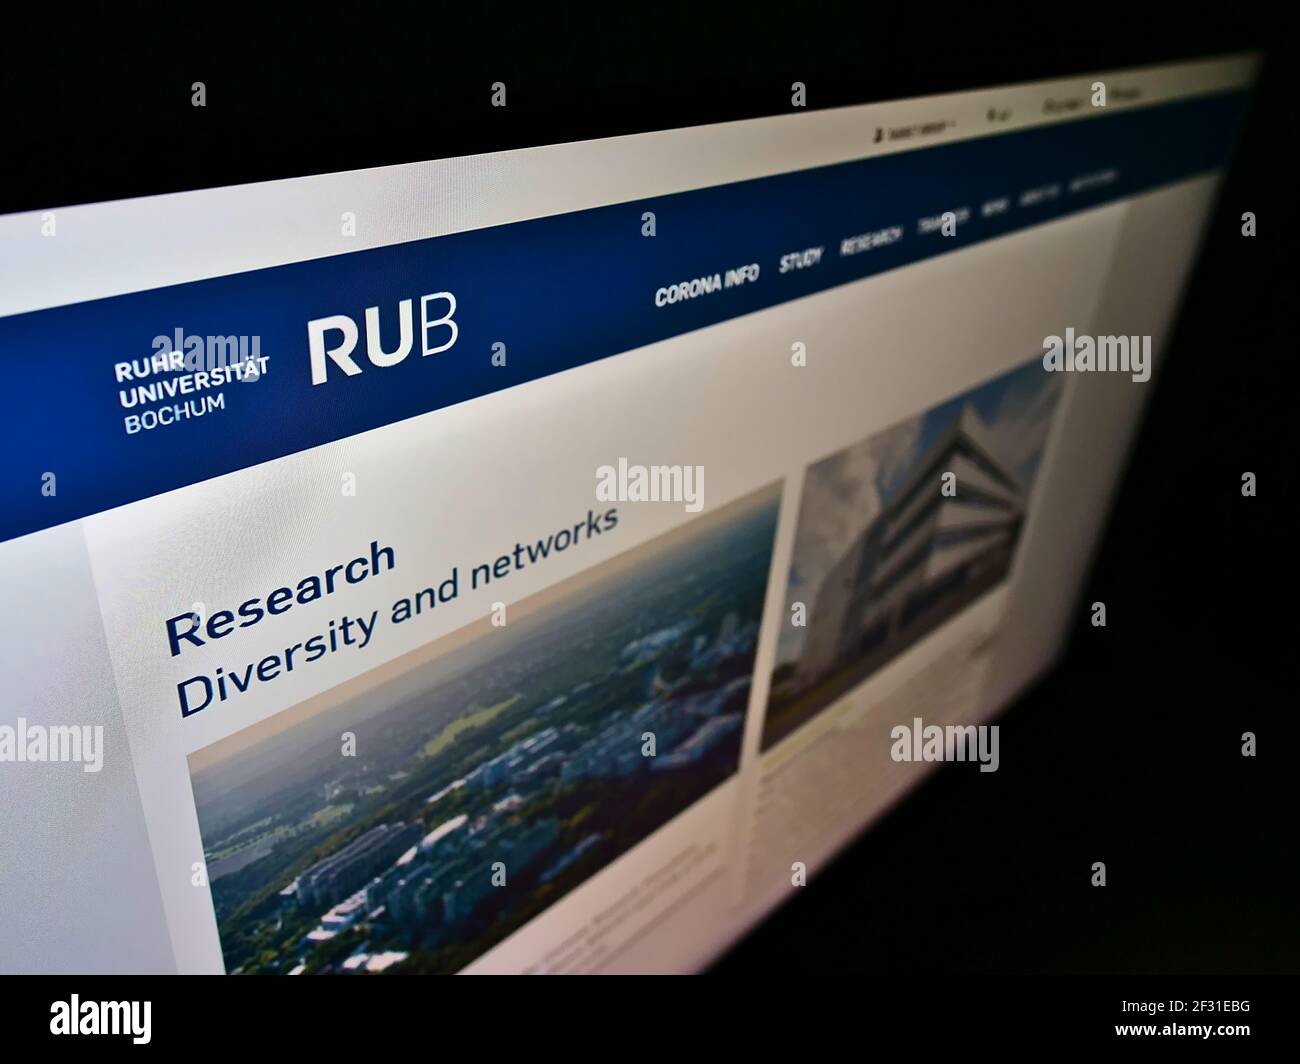 Vista de gran angular de la página web con el logotipo de la institución educativa alemana Ruhr-Universität Bochum (RUB) en el monitor. Enfoque en la parte superior izquierda de la pantalla. Foto de stock